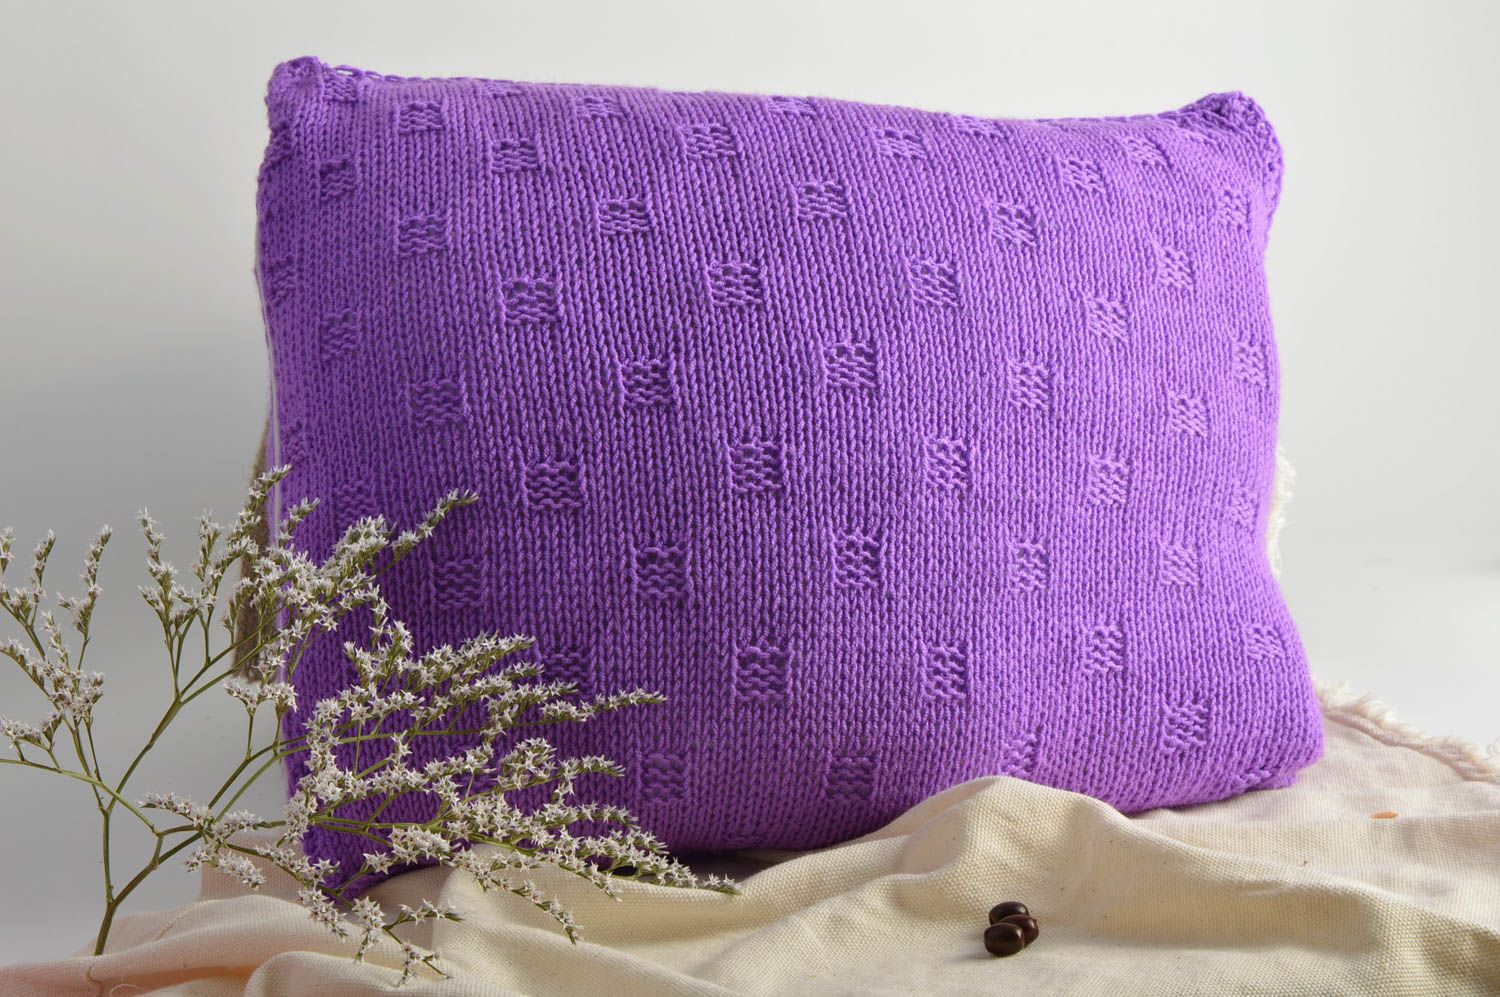 Вязаная наволочка на подушку фиолетовая красивая небольшая стильная хэнд мейд фото 1